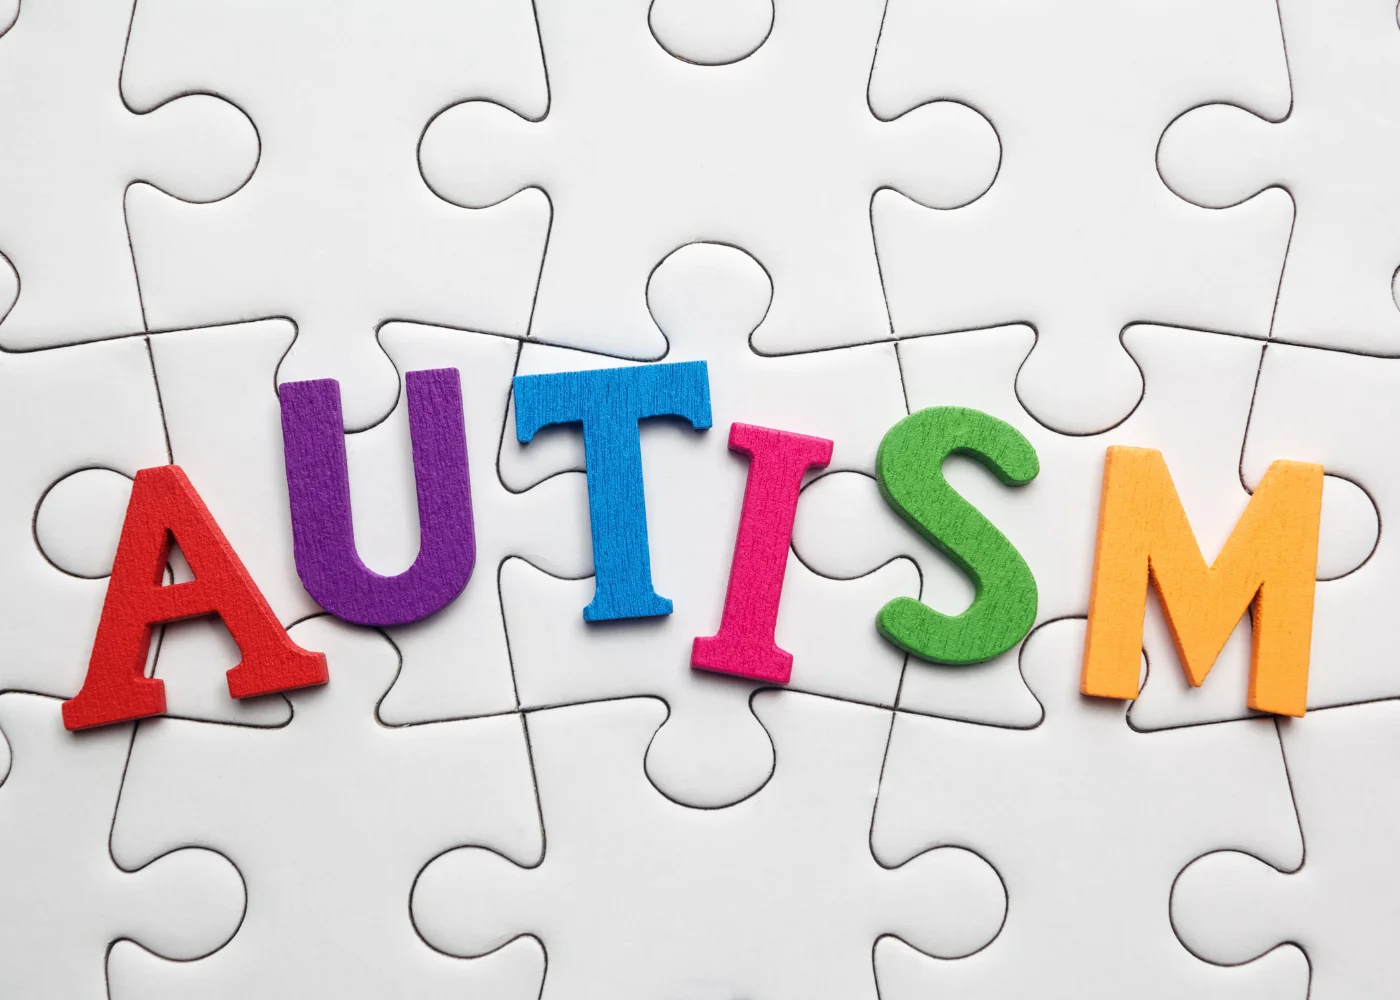 Лекция Зайры Али. Часть 1: Аутизм: Что это за диагноз и как это влияет на вмешательство.